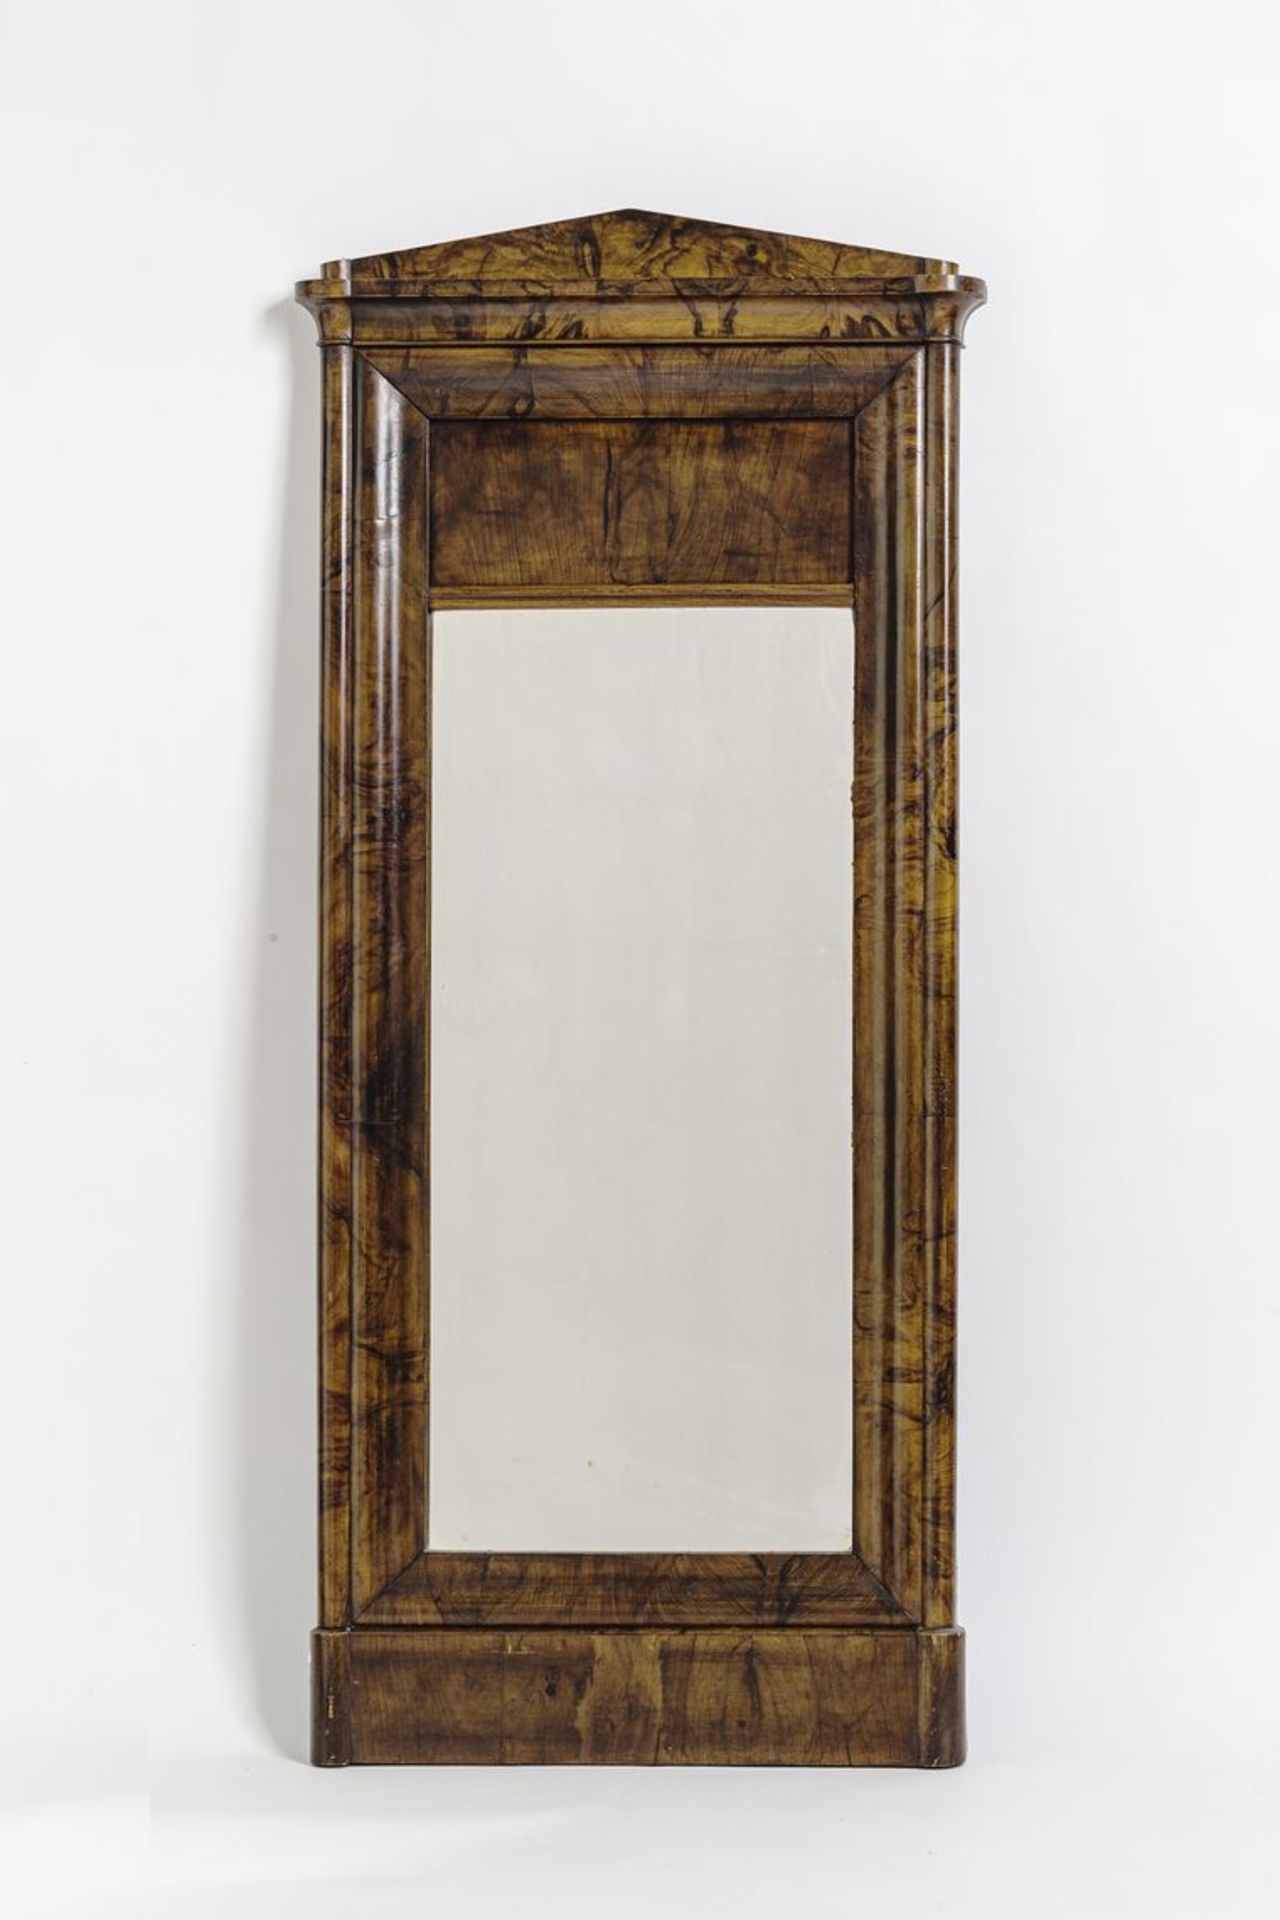 Empire-PfeilerspiegelMahagoni, geschwungener Rahmen, architektonisches Gesims. Um 1810. H. 143 cm,